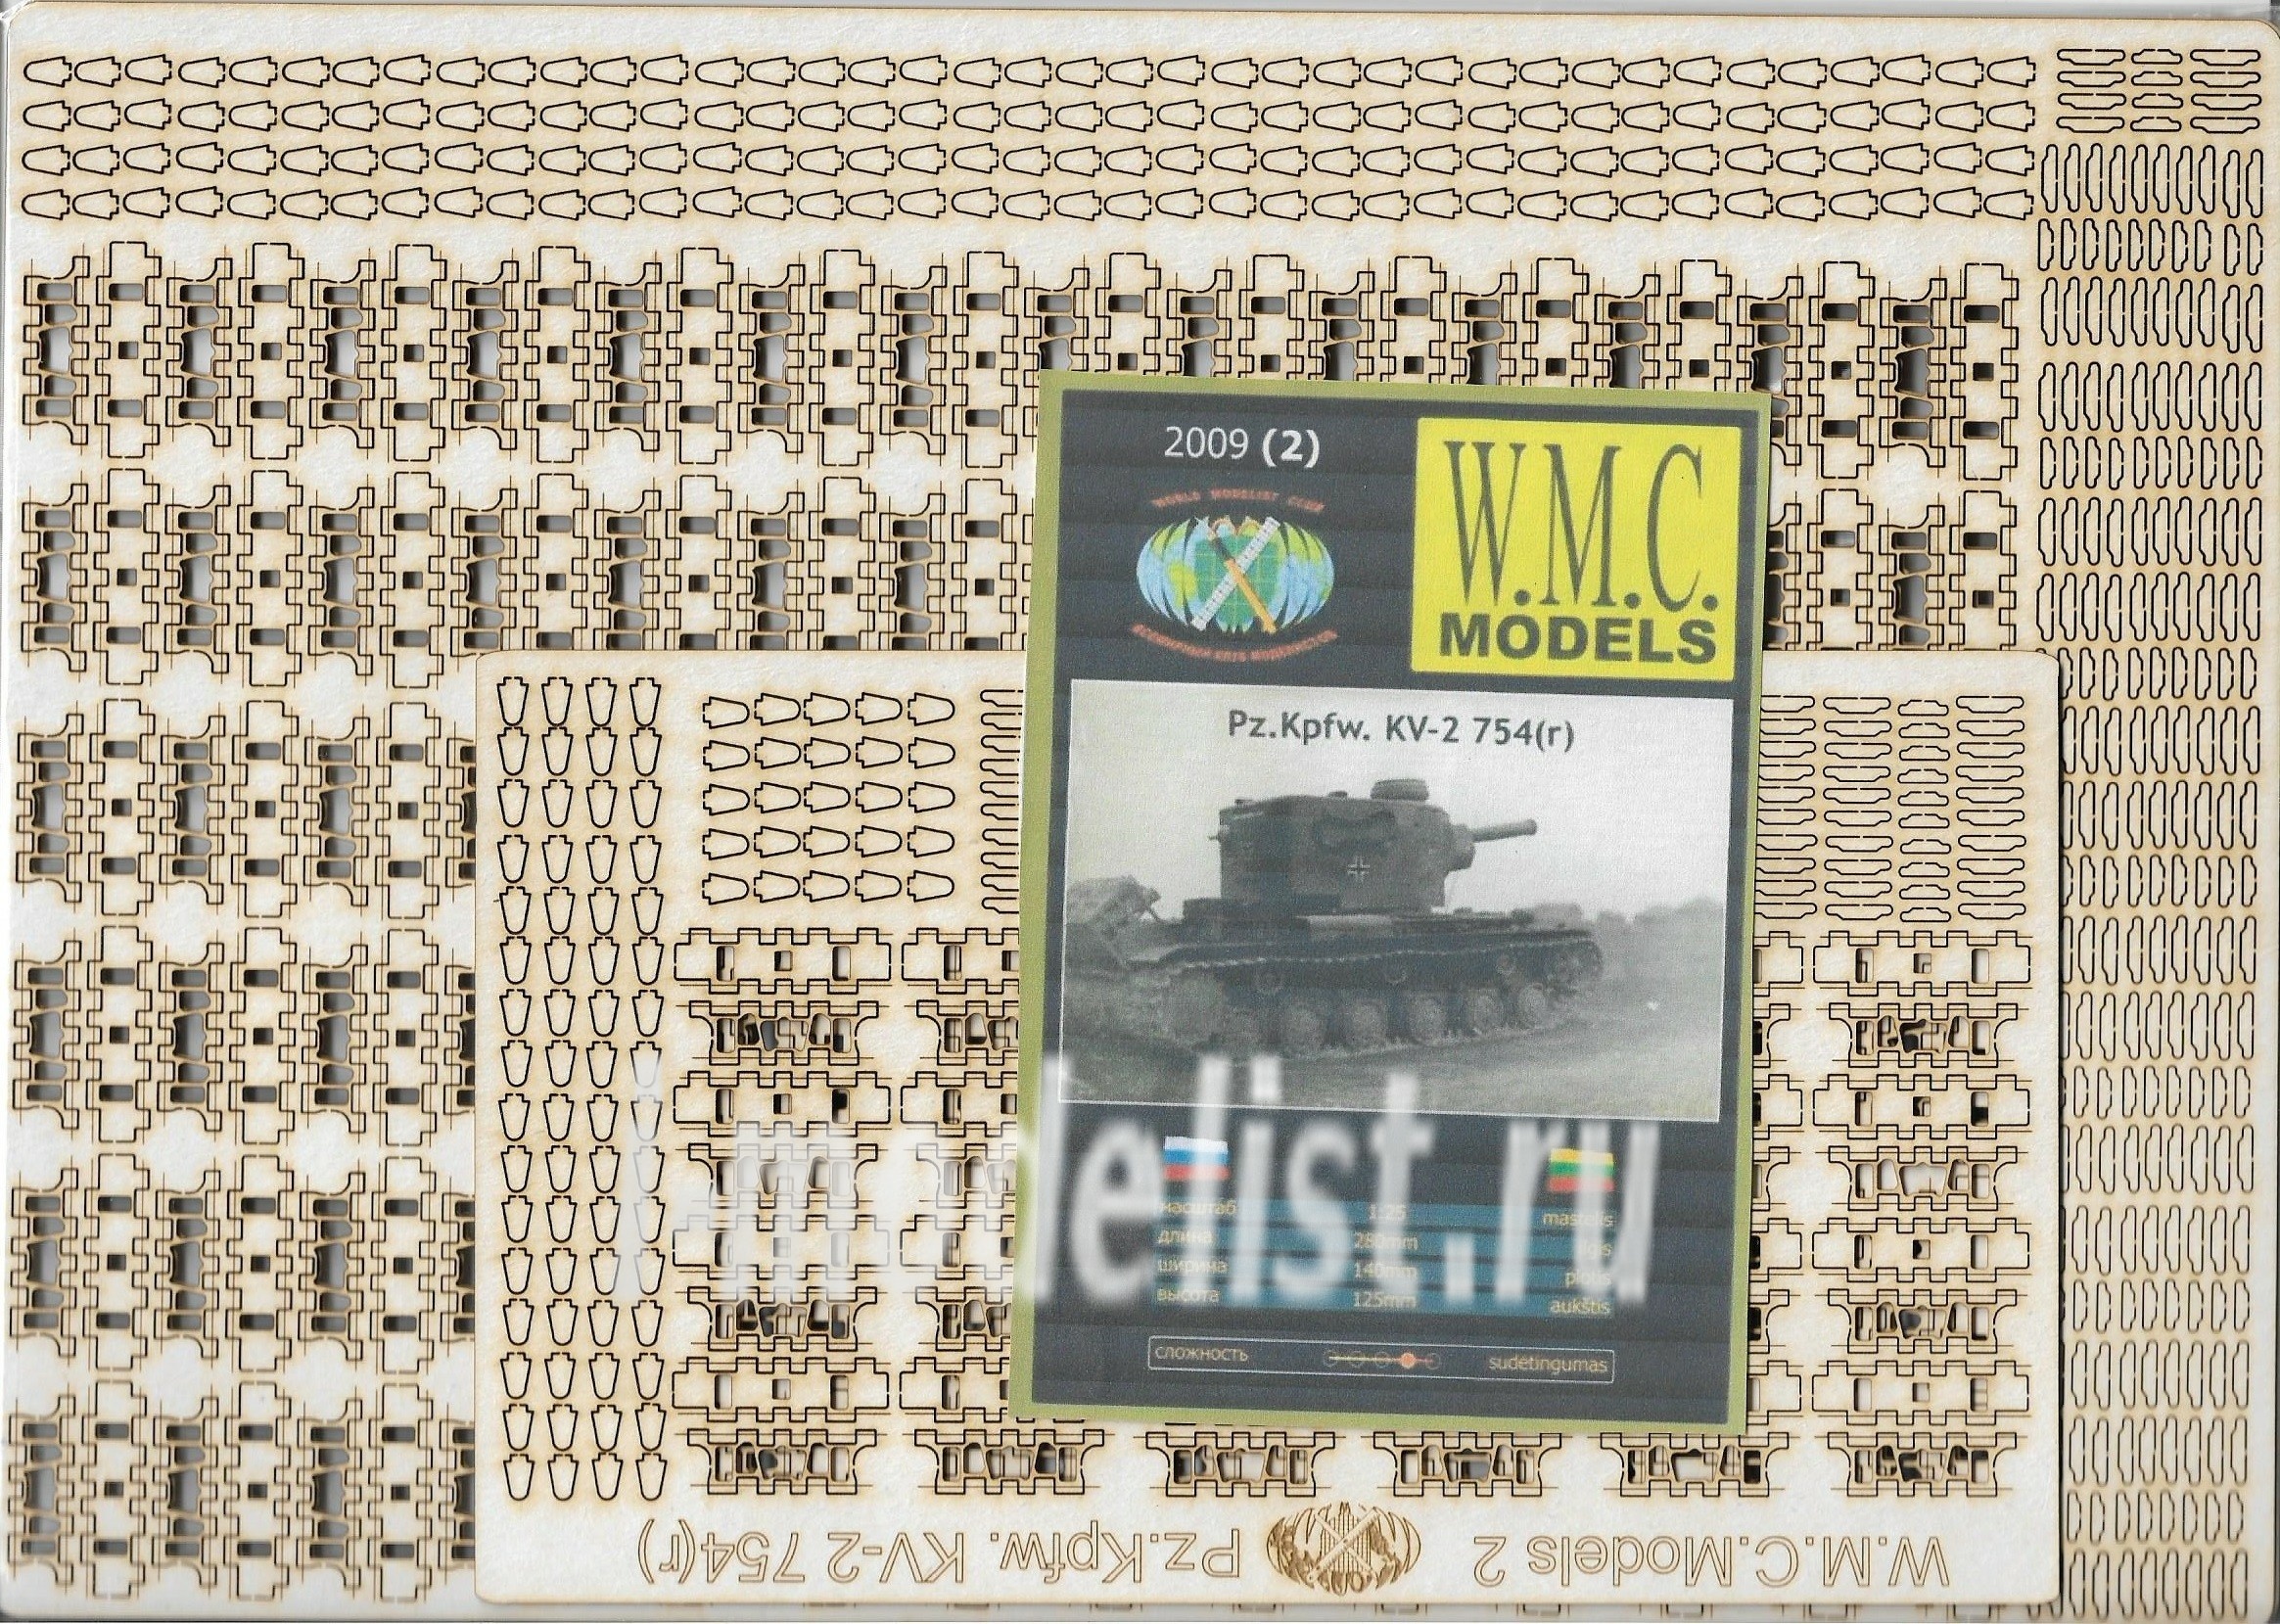 WMC-02-1L W.M.C. Models 1/25 Дополнительный набор траков для модели Танк Pz.Kpfw. KV-2 754(r) (лазерная резка)